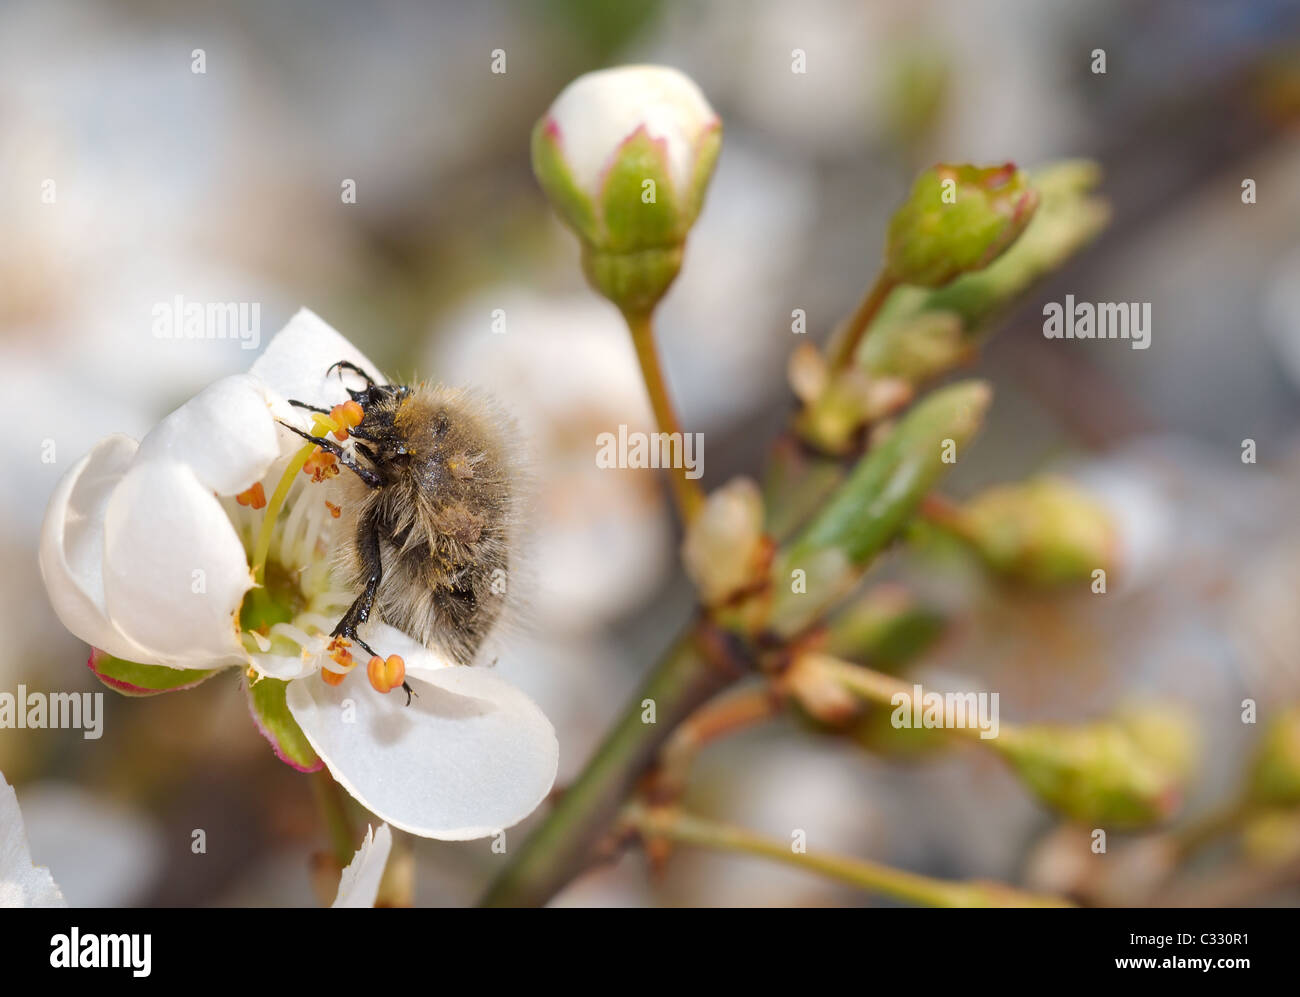 Apple blossom beetle (Epicometis hirta Poda), Ukraine, Eastern Europe Stock Photo